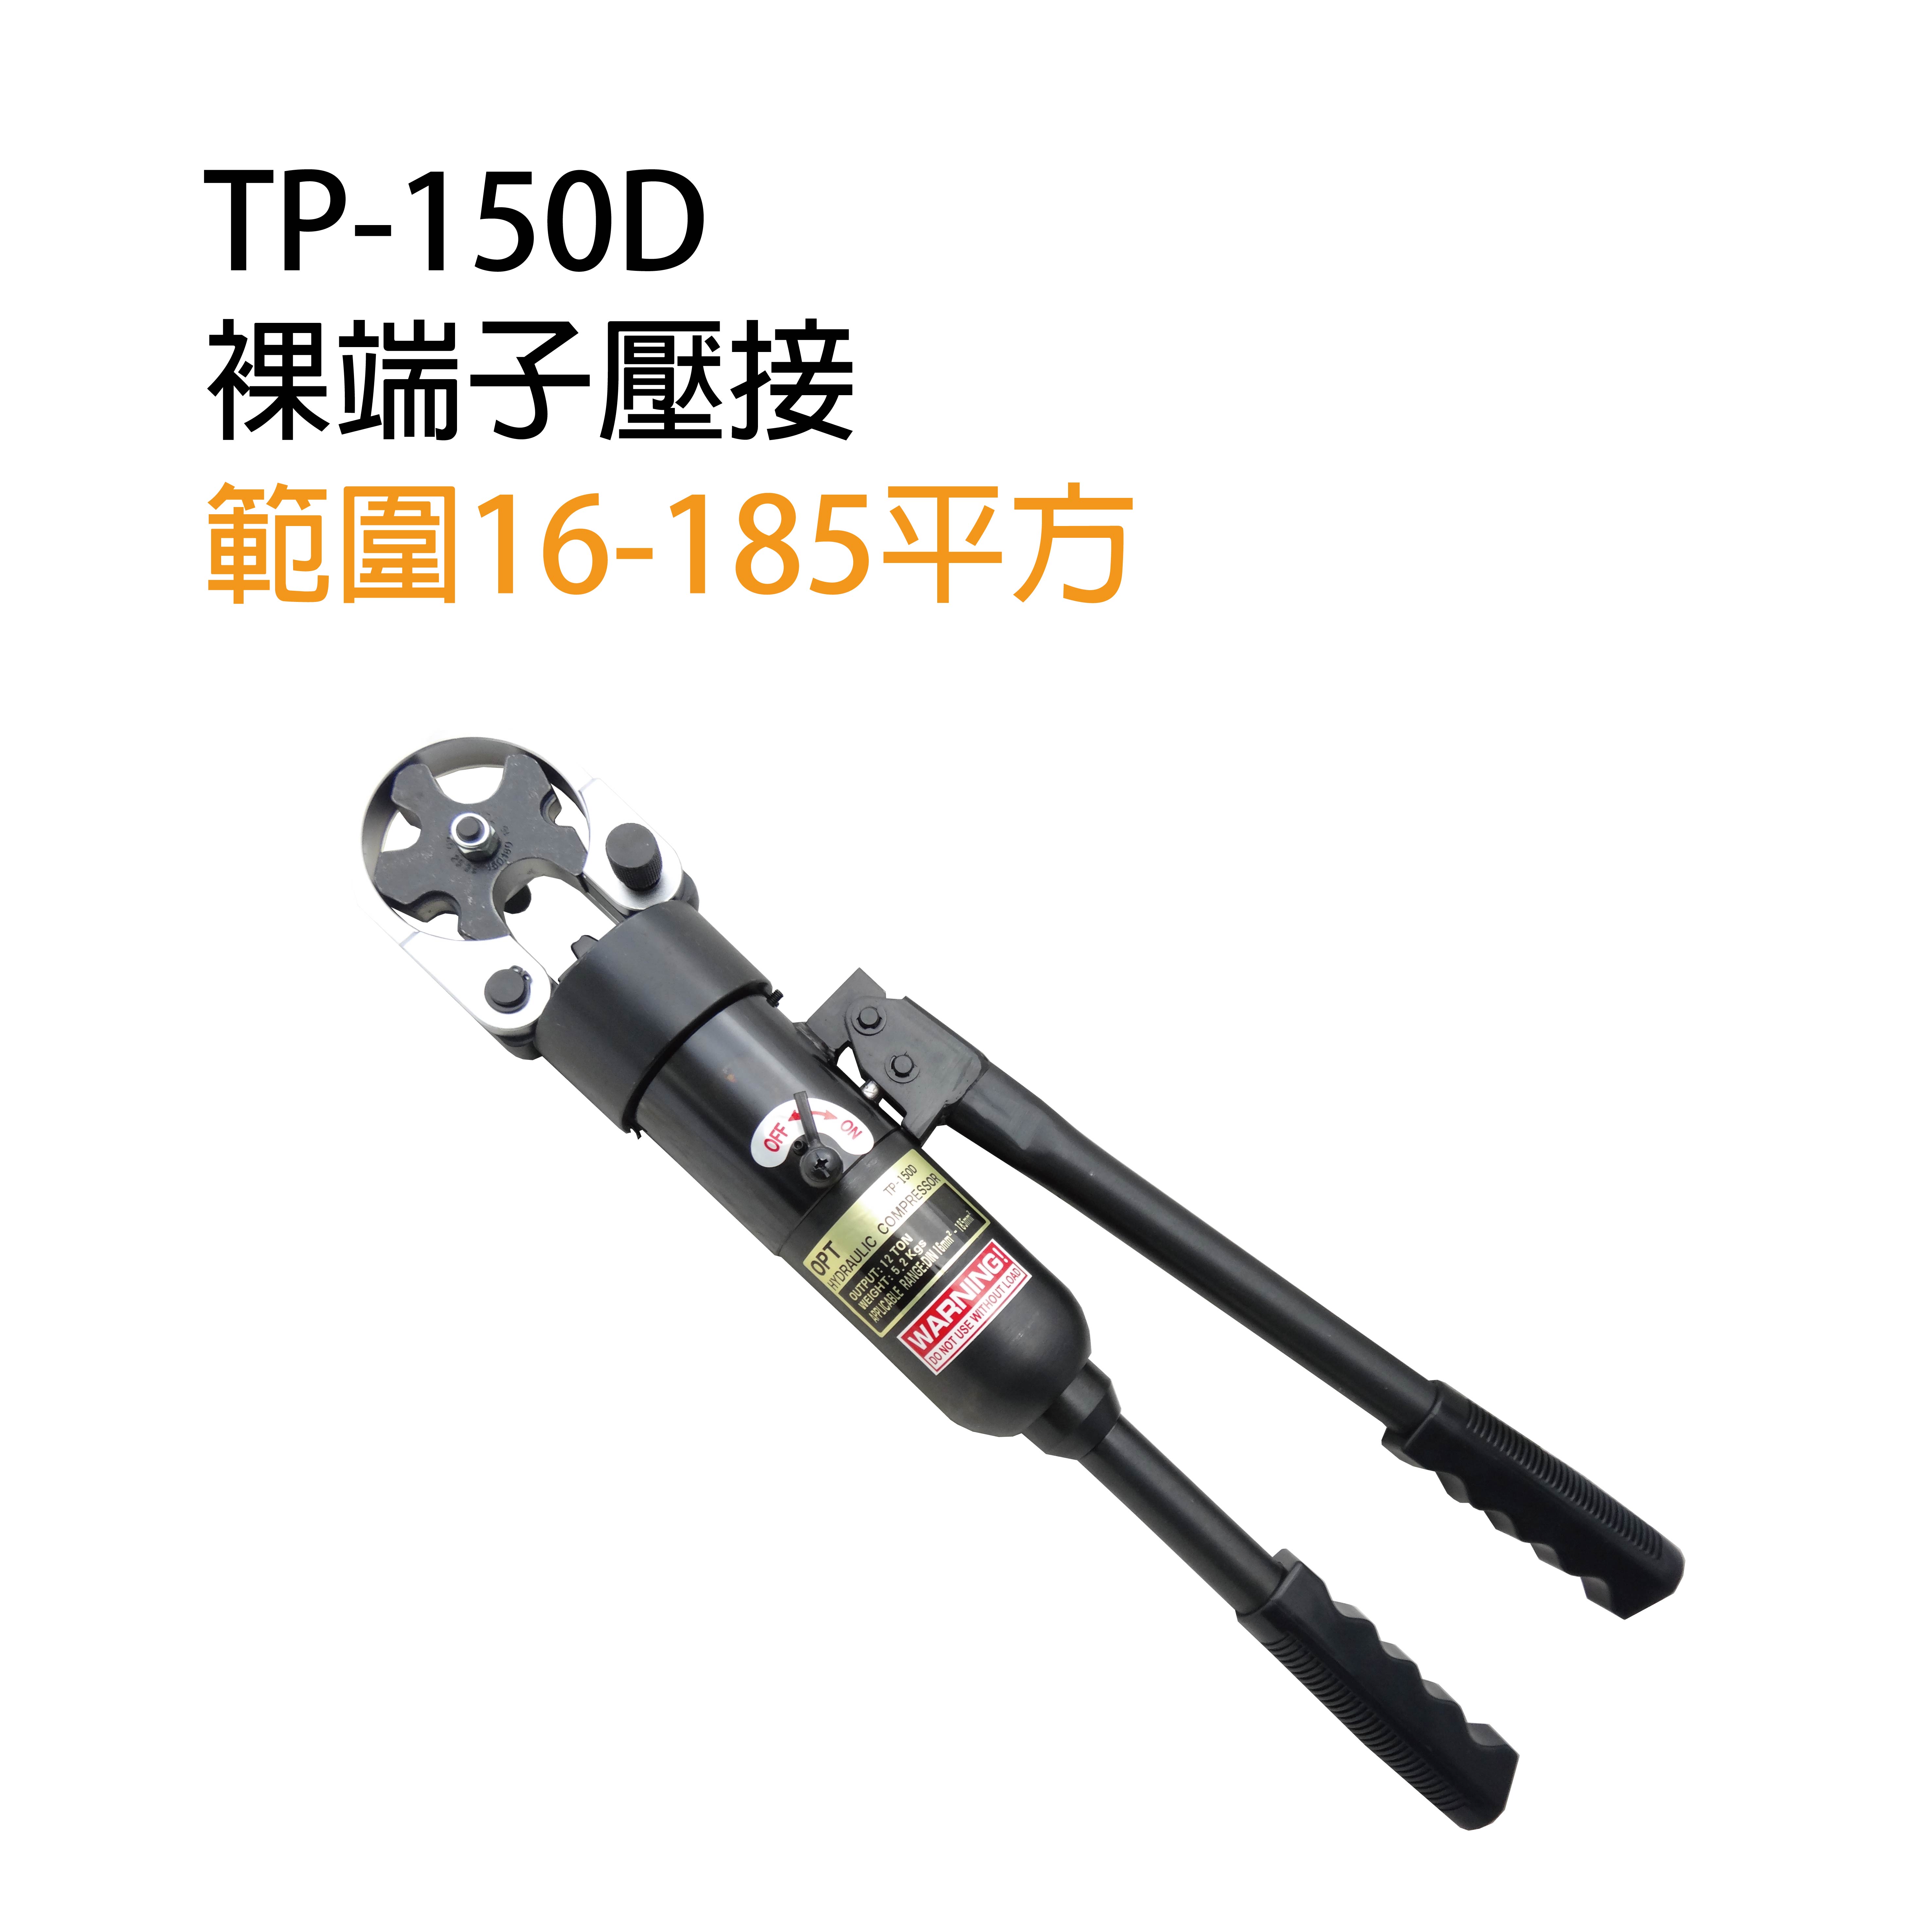 TP-150D MANUAL HYDRAULIC CRIMPING TOOLS-TP-150D